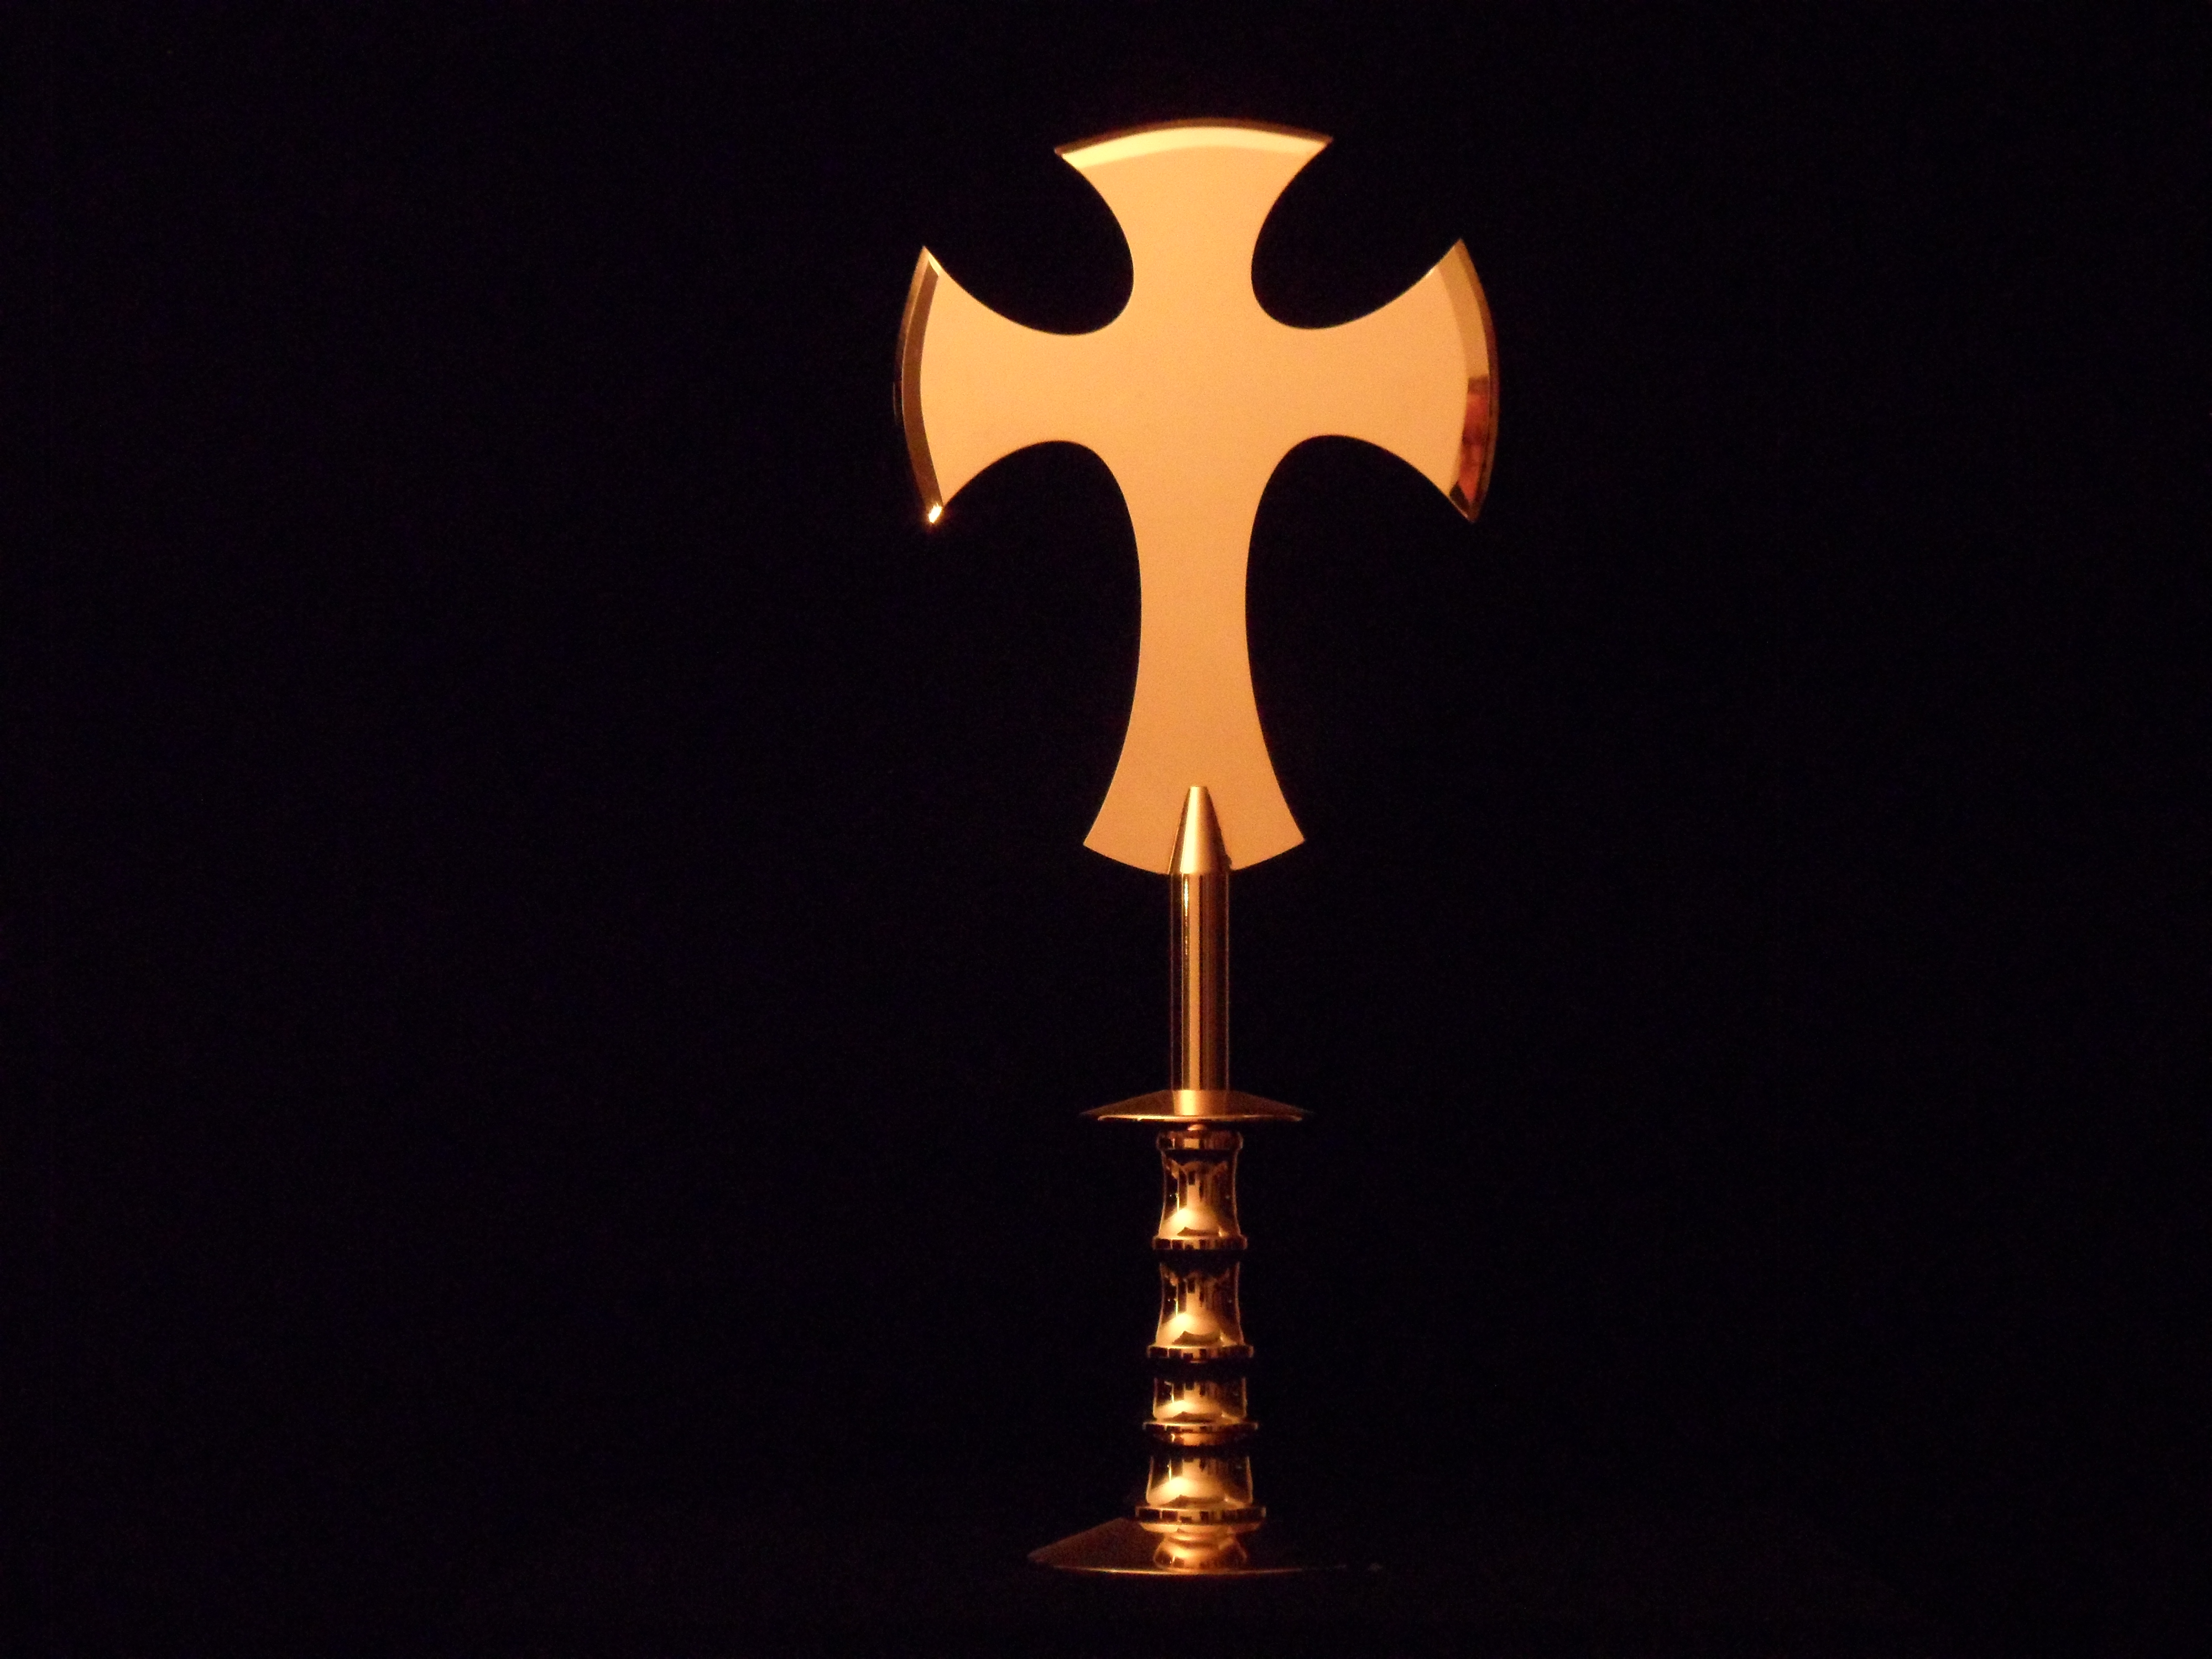 The Adoration De Aanbidding Christian symbol as fistweapon Christelijk symbool als vuistwapen- Gold plated steel